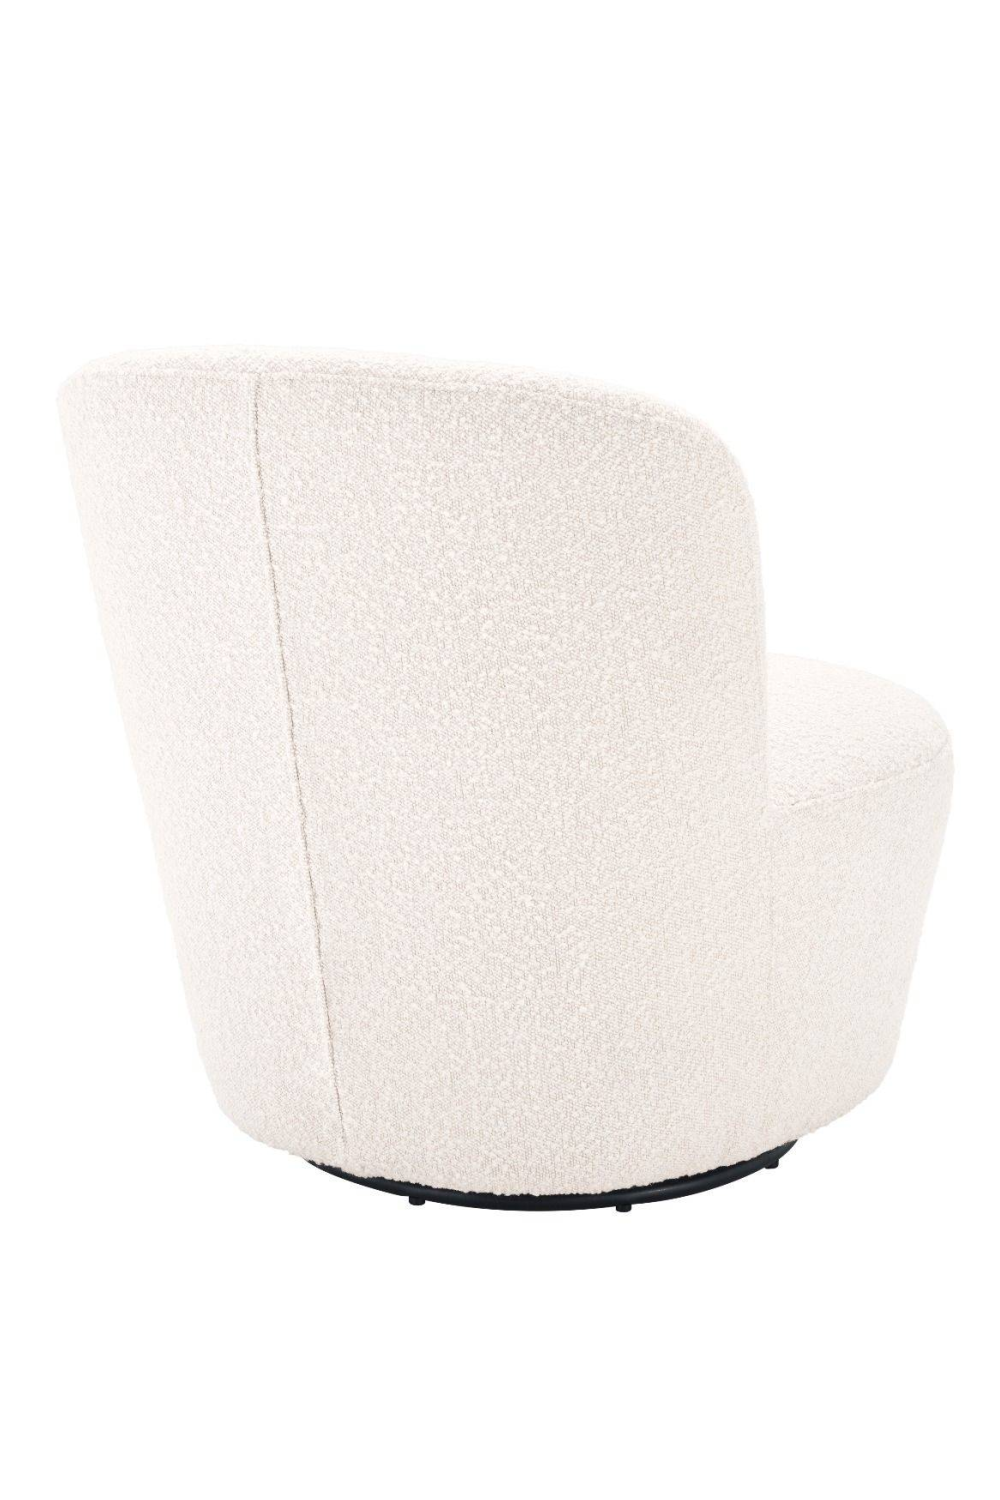 White Domed Back Swivel Chair | Eichholtz Doria | Oroa.com